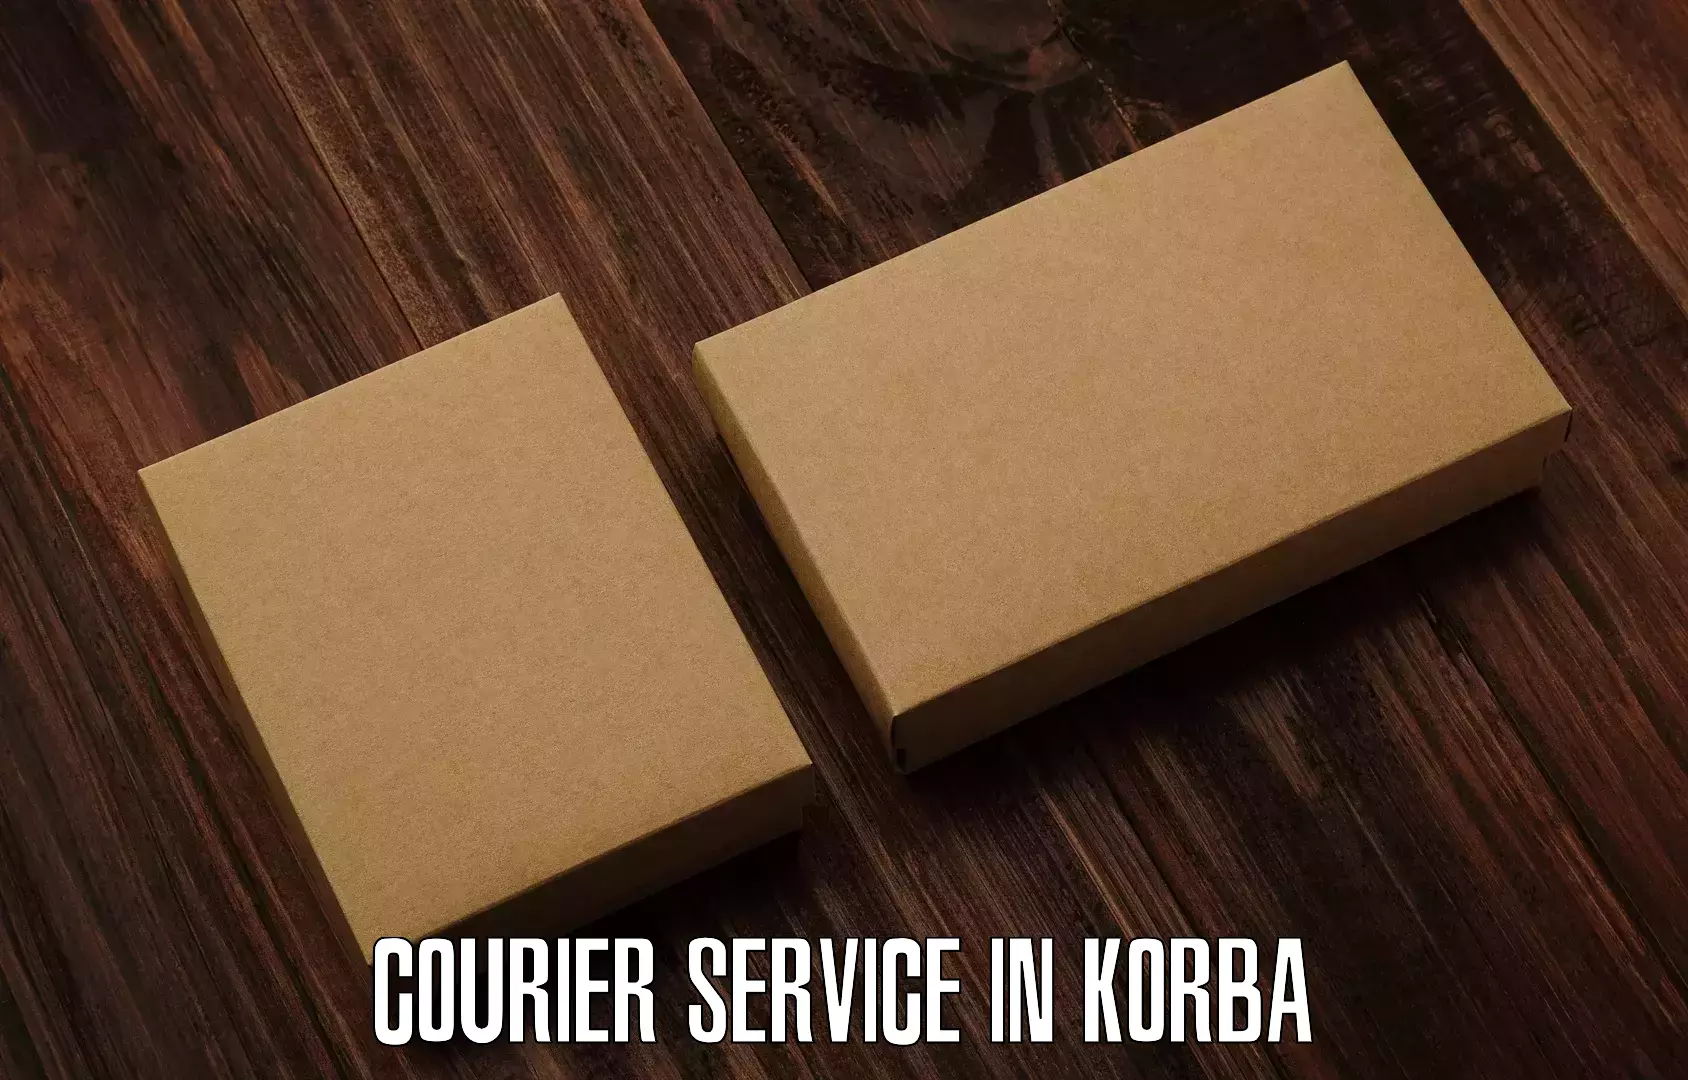 Bulk shipment in Korba